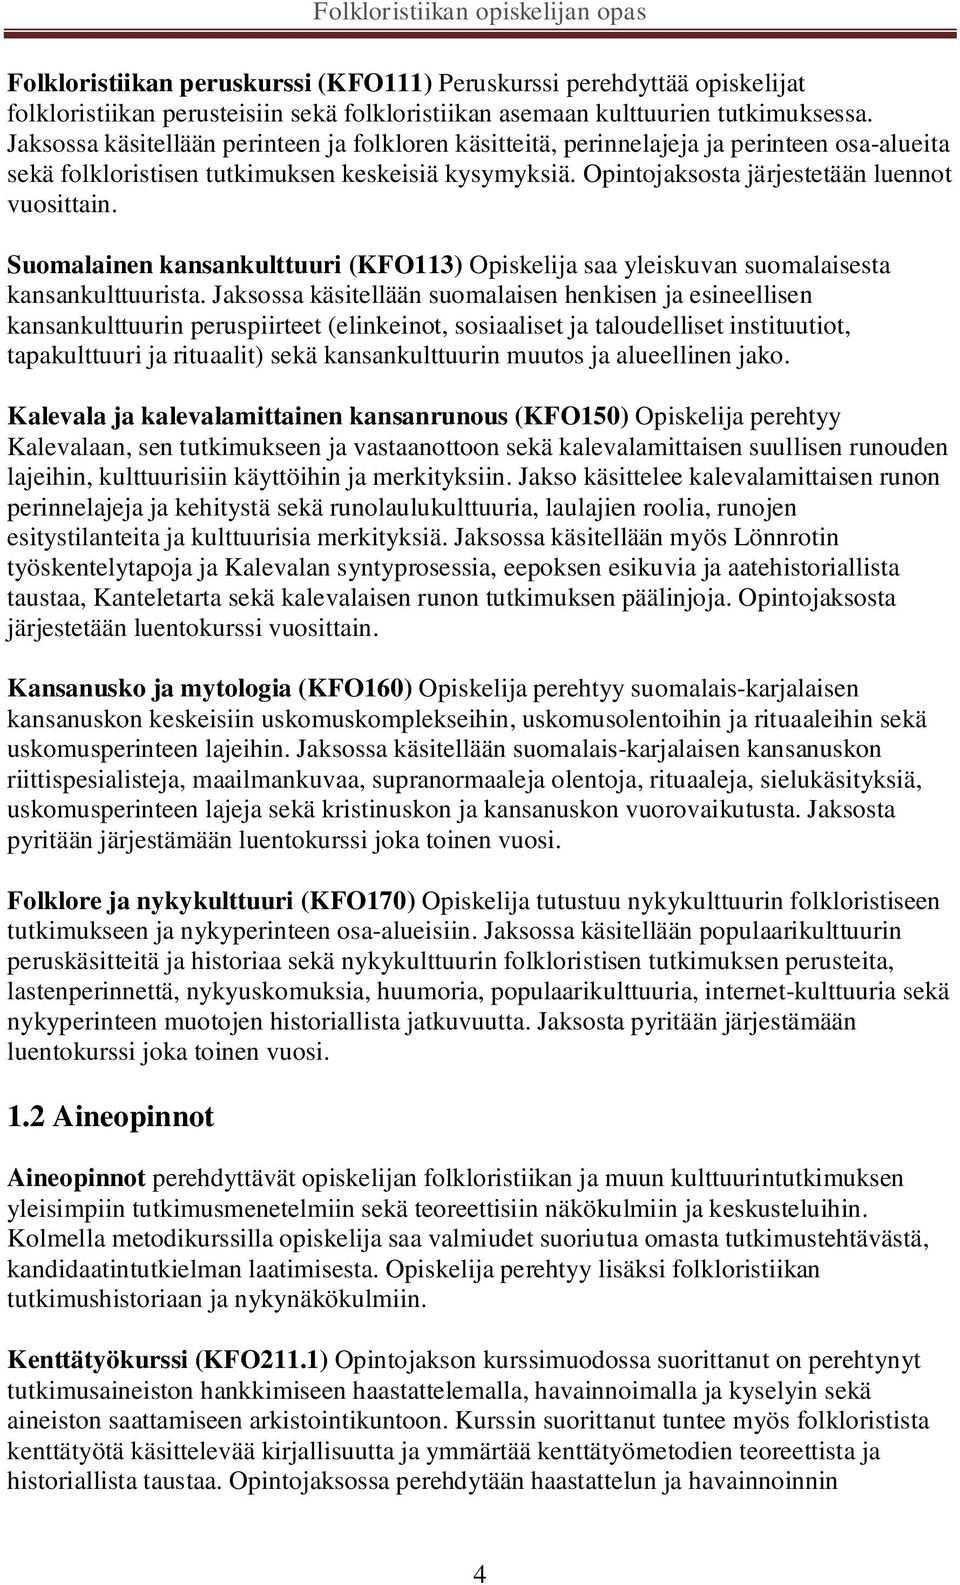 Suomalainen kansankulttuuri (KFO113) Opiskelija saa yleiskuvan suomalaisesta kansankulttuurista.